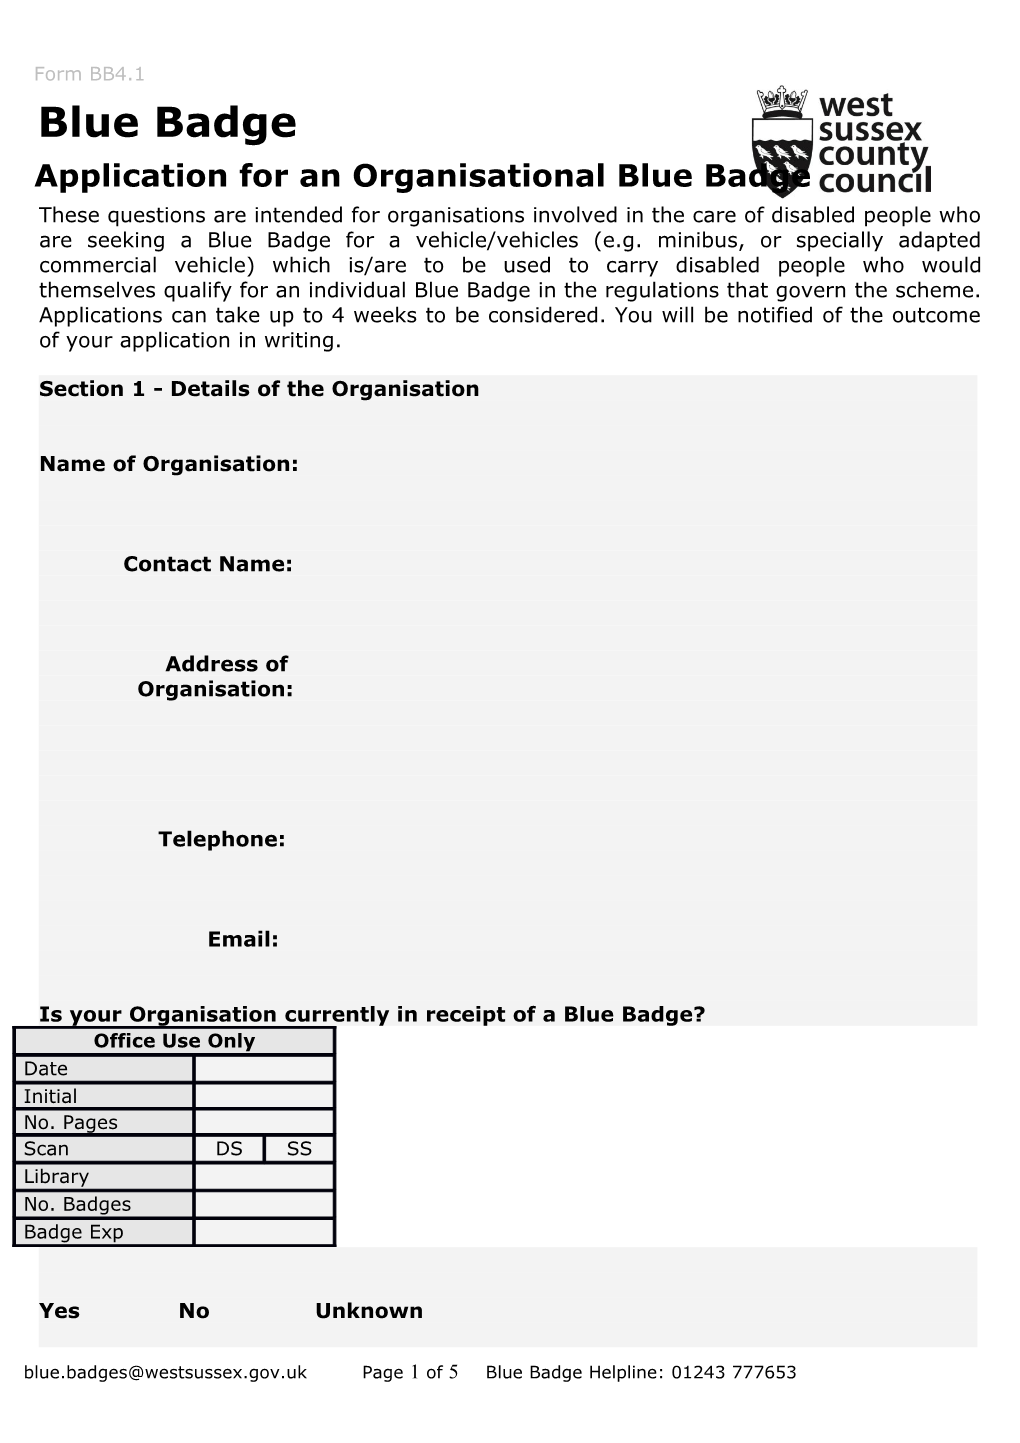 Blue Badge Organisation Application Form